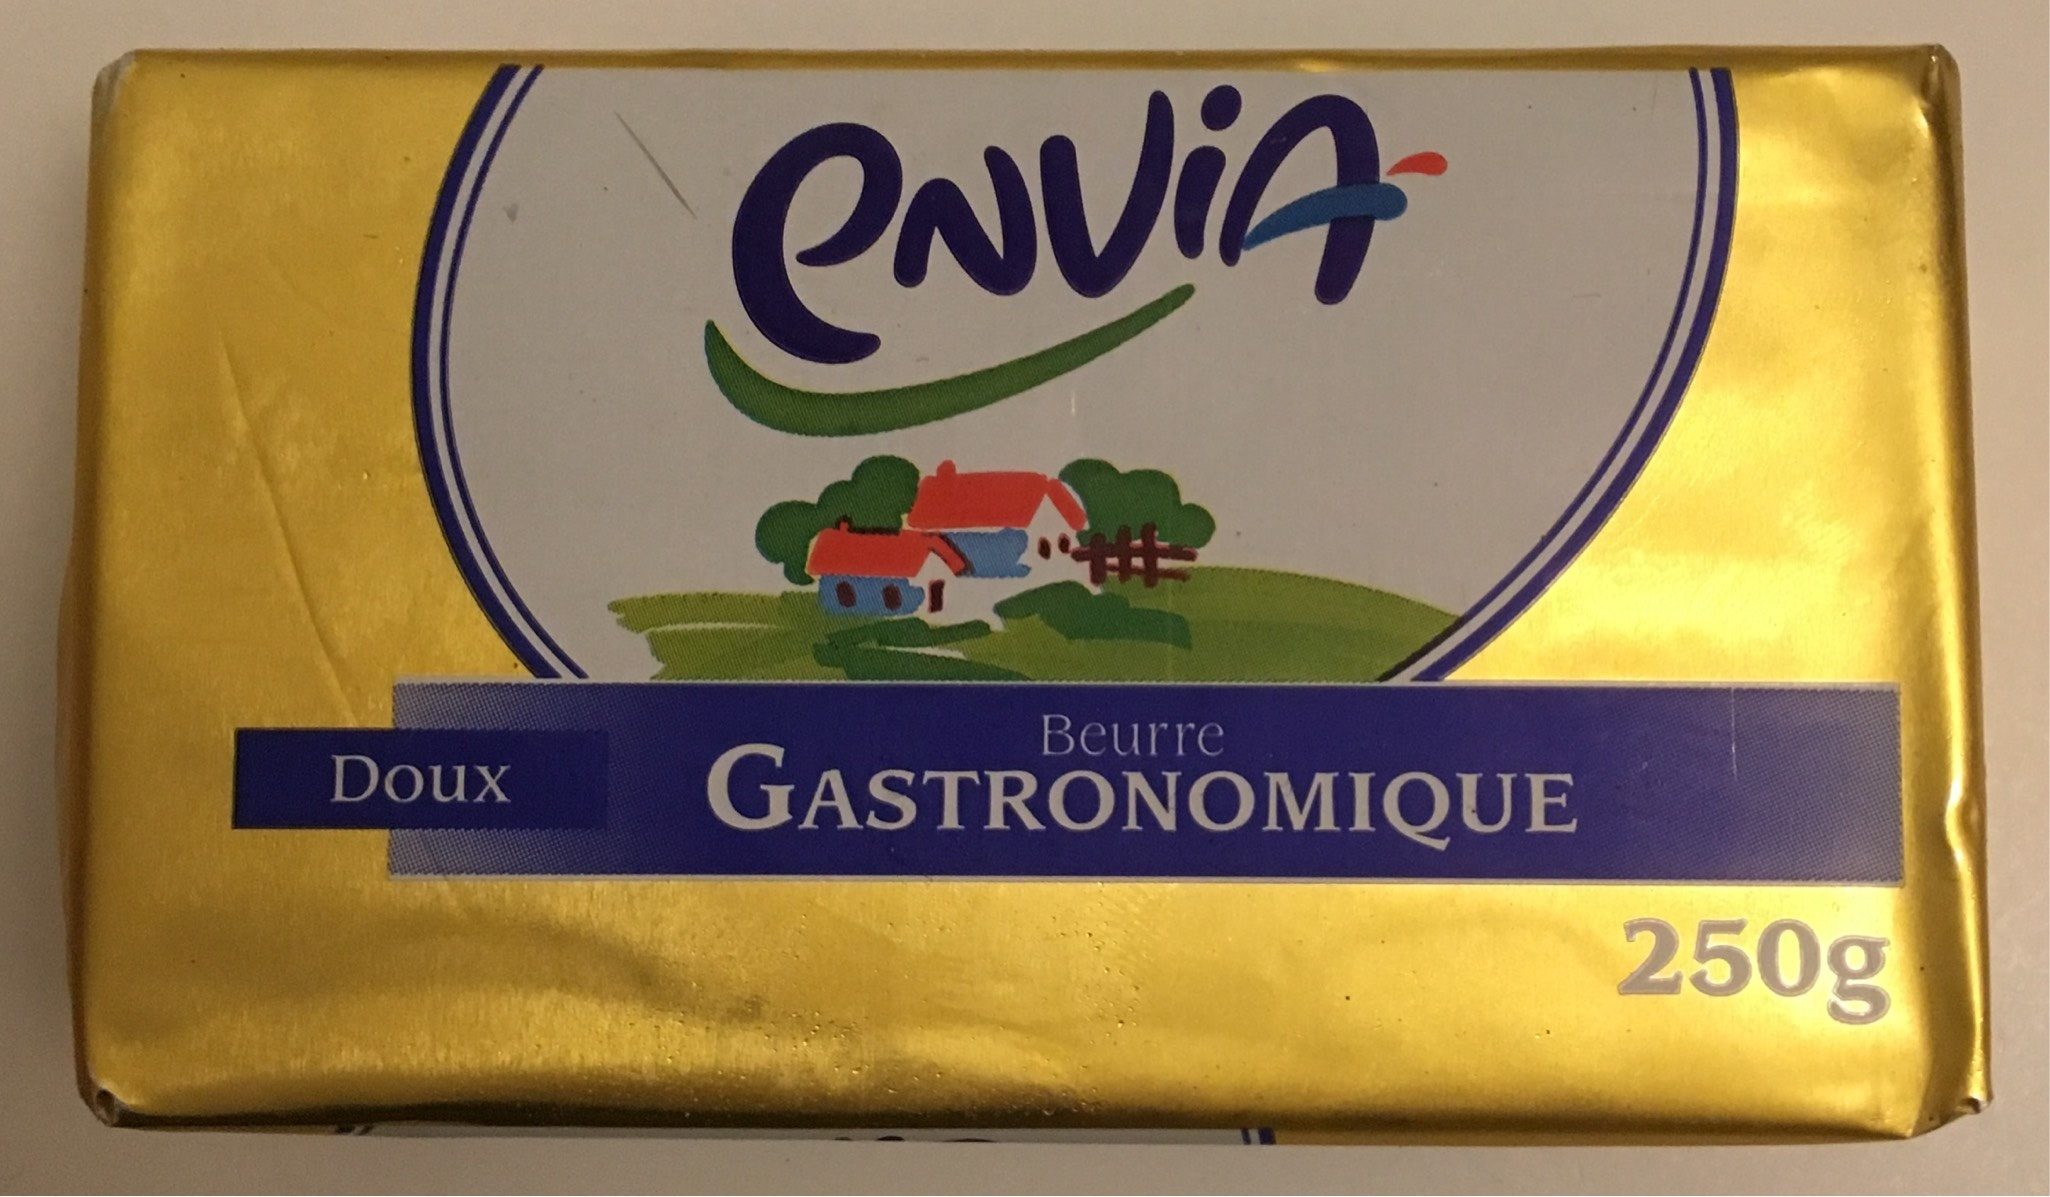 Beurre Gastronomique Doux - Produkt - fr